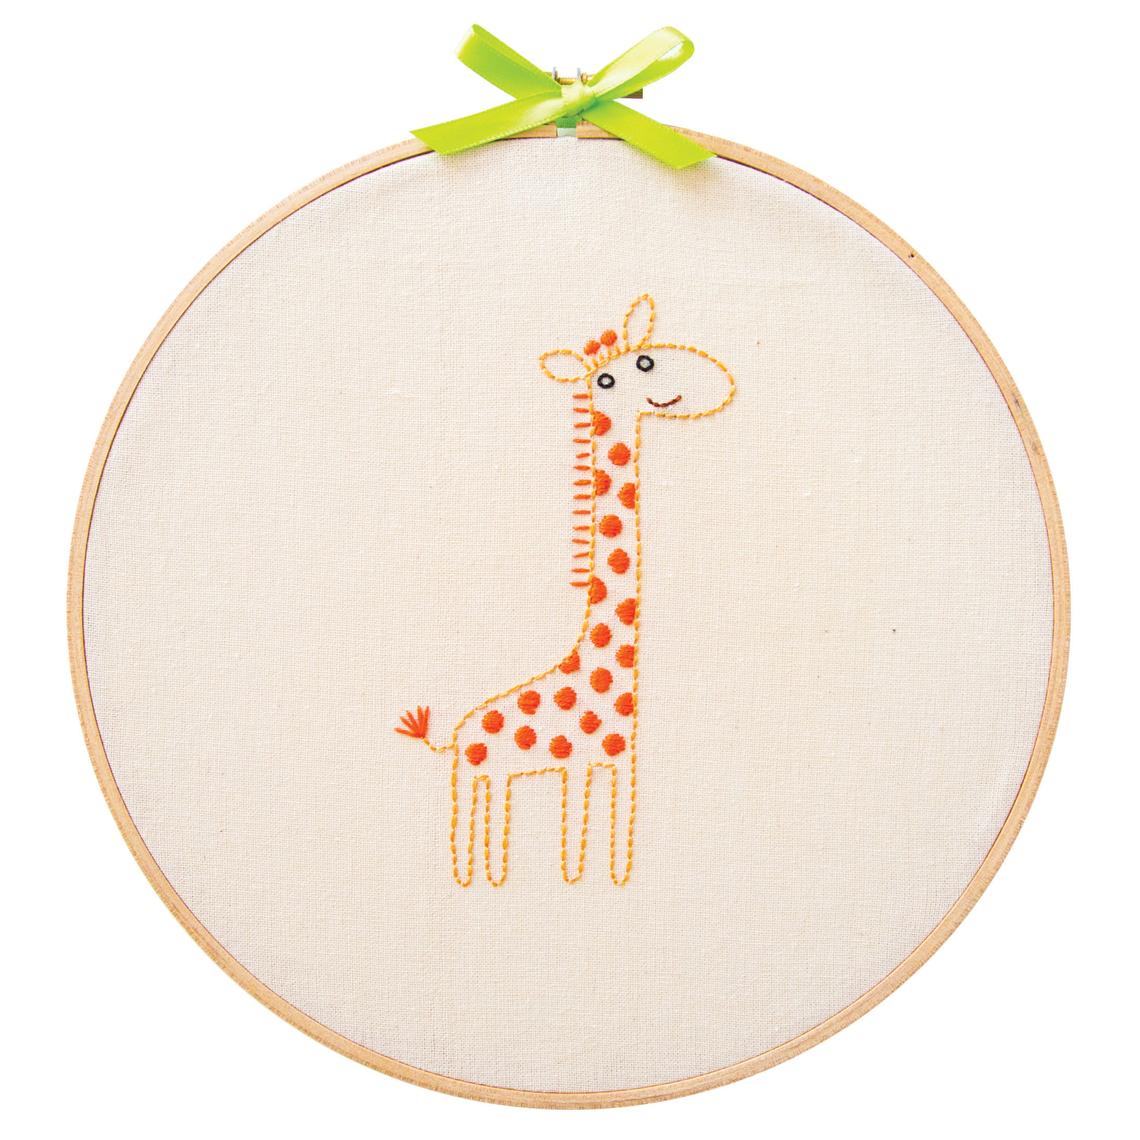 Giraffe embroidery kit for beginners